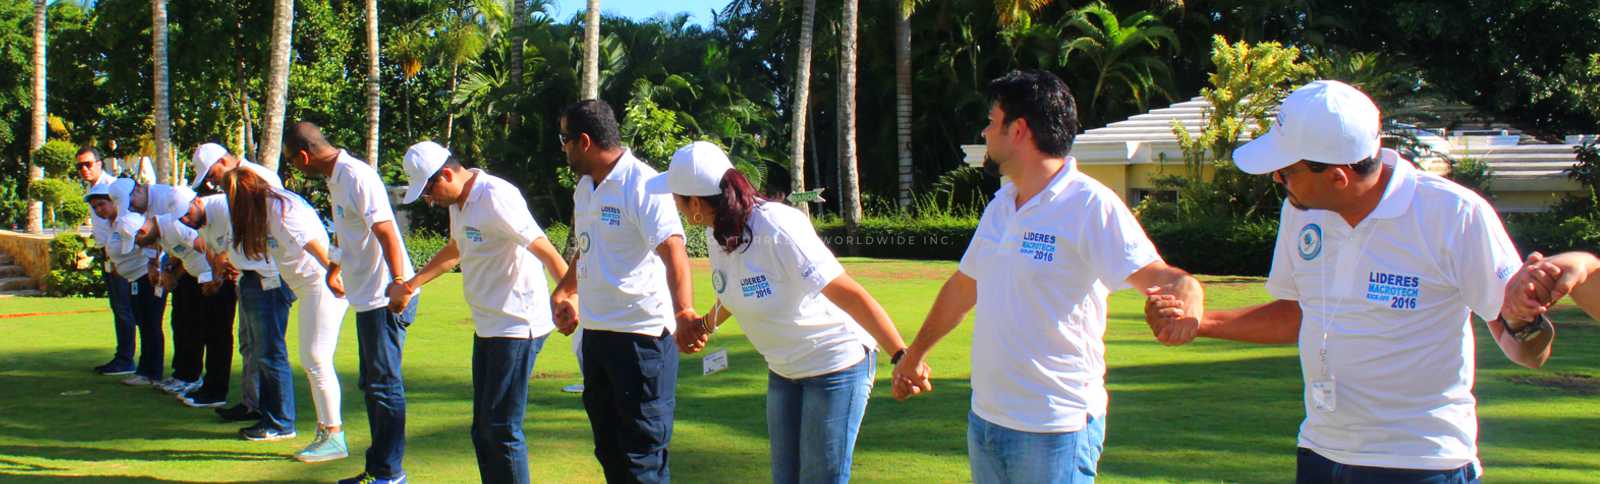 Panamá Team Building, programas corporativos online y full-day para desarrollar las nuevas habilidades de tus equipos de trabajo remotos frente a los cambios